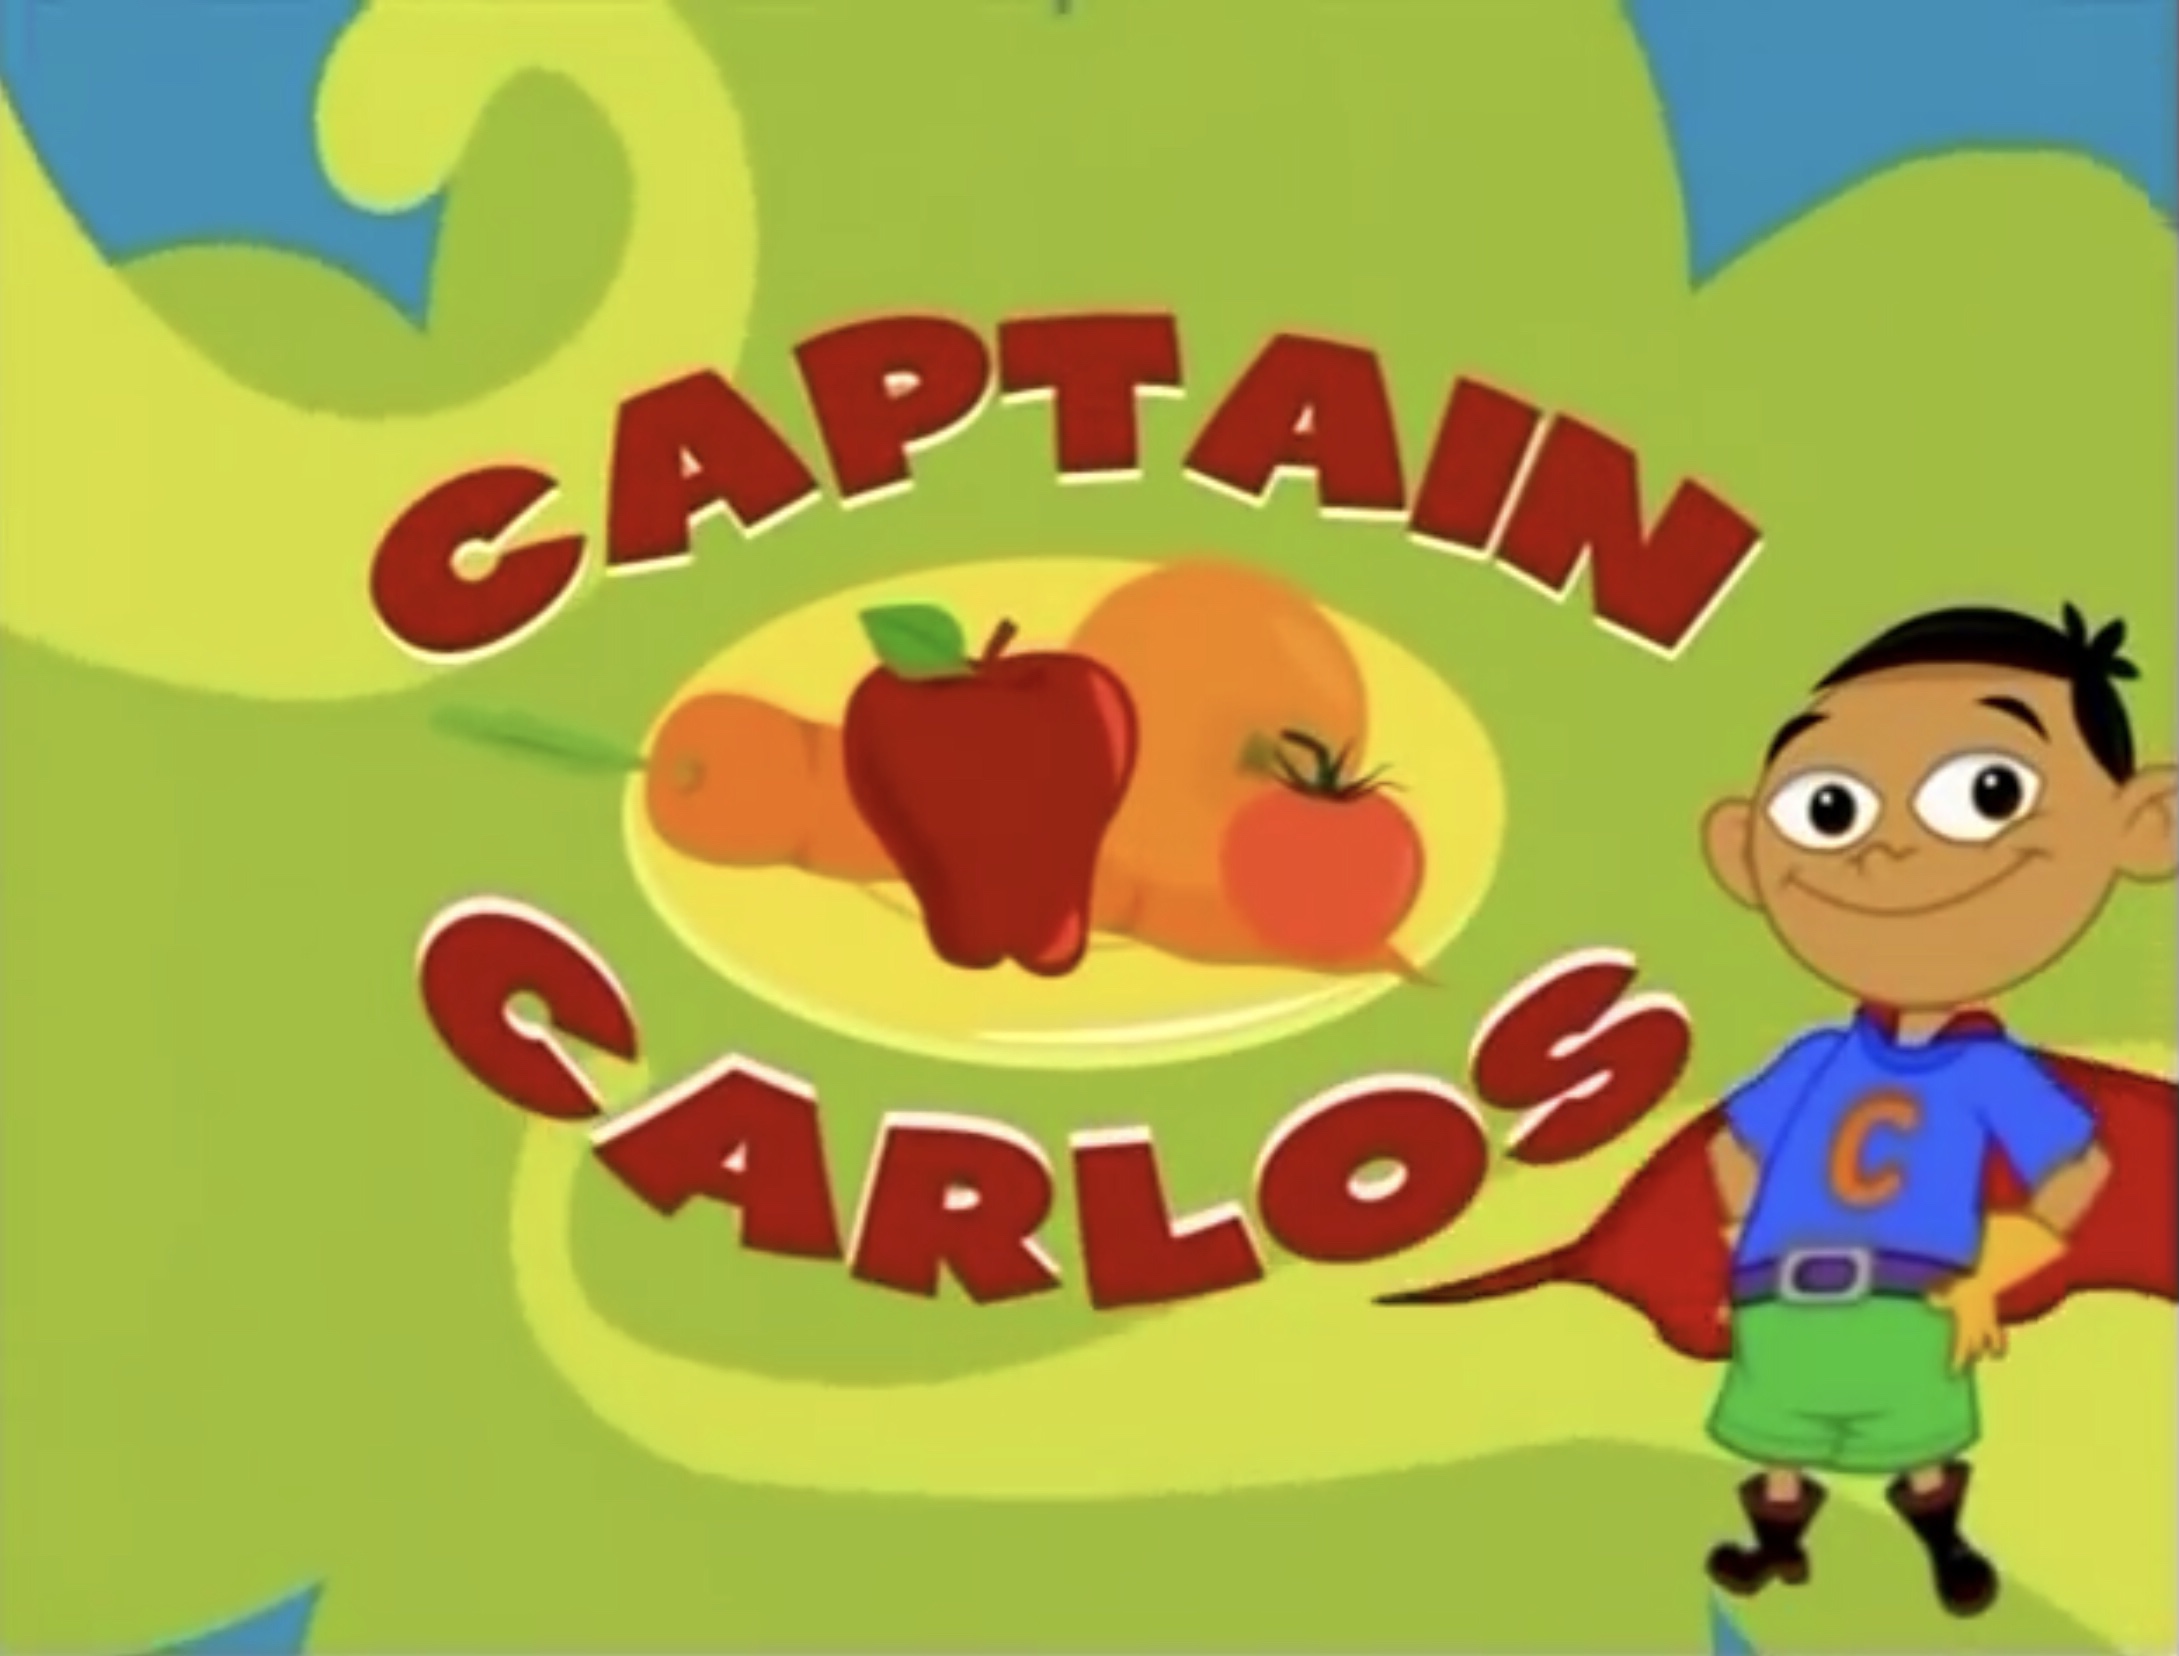 Captain carlos title.jpeg